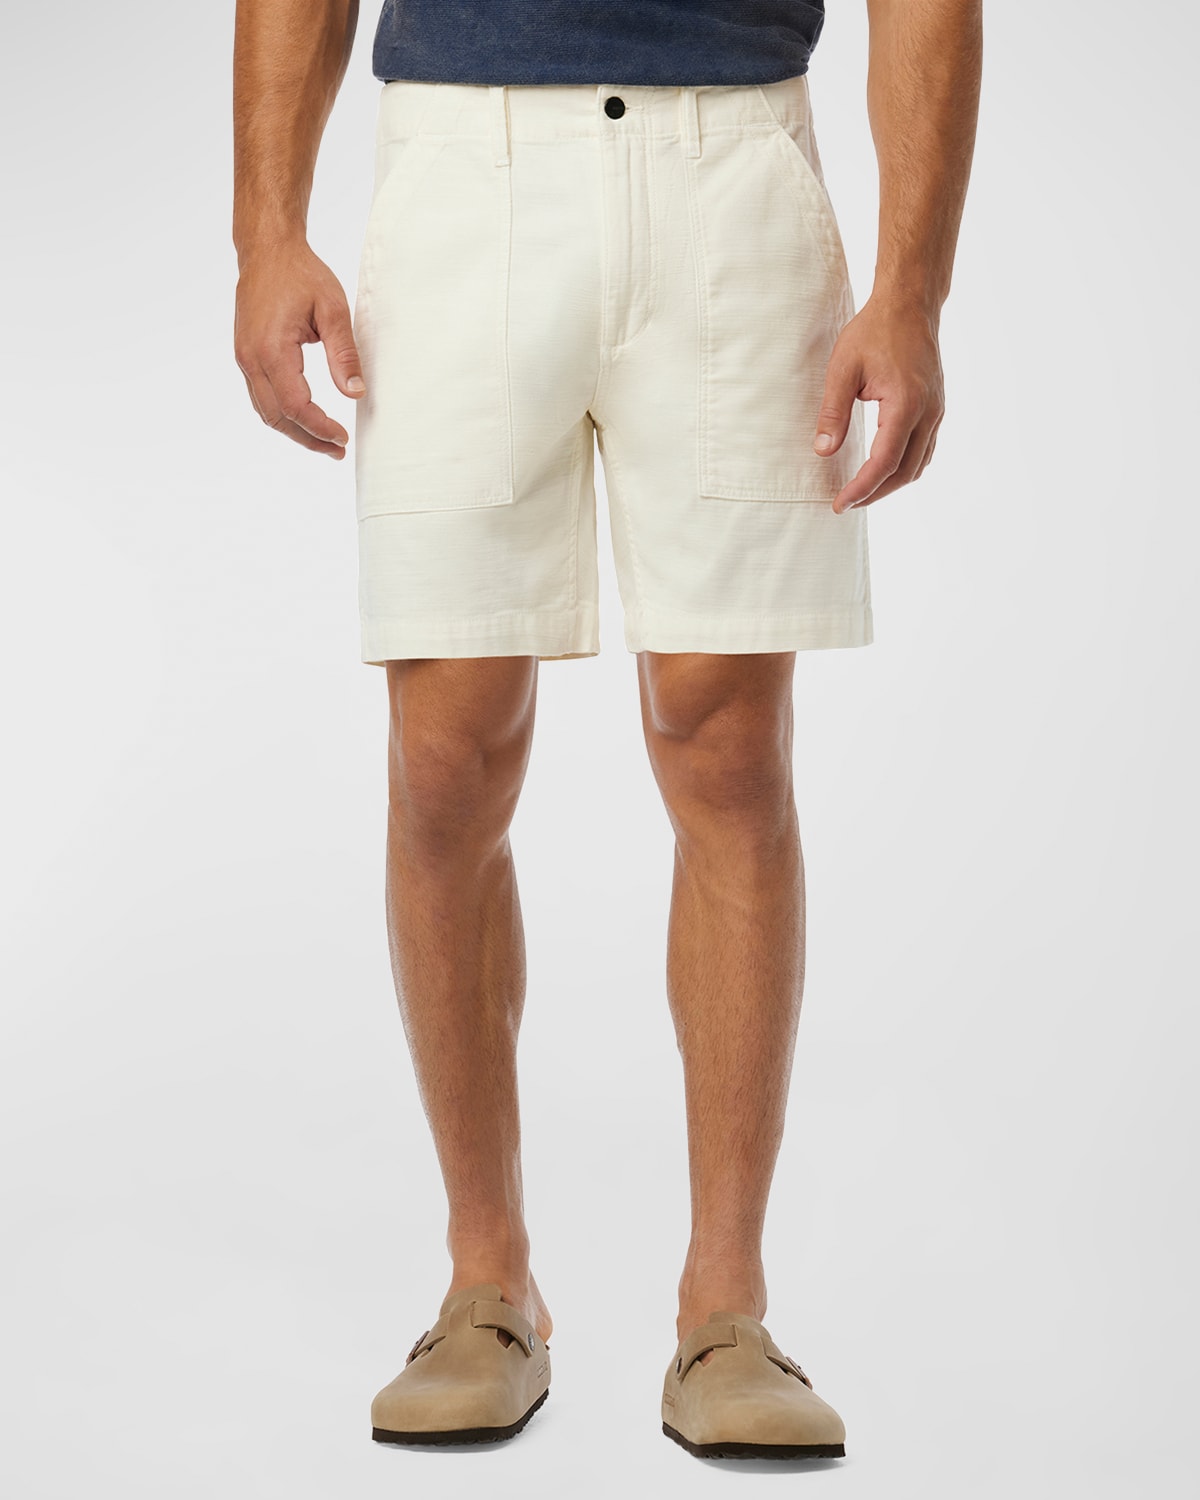 Men's Fatigue Cotton Sateen Shorts